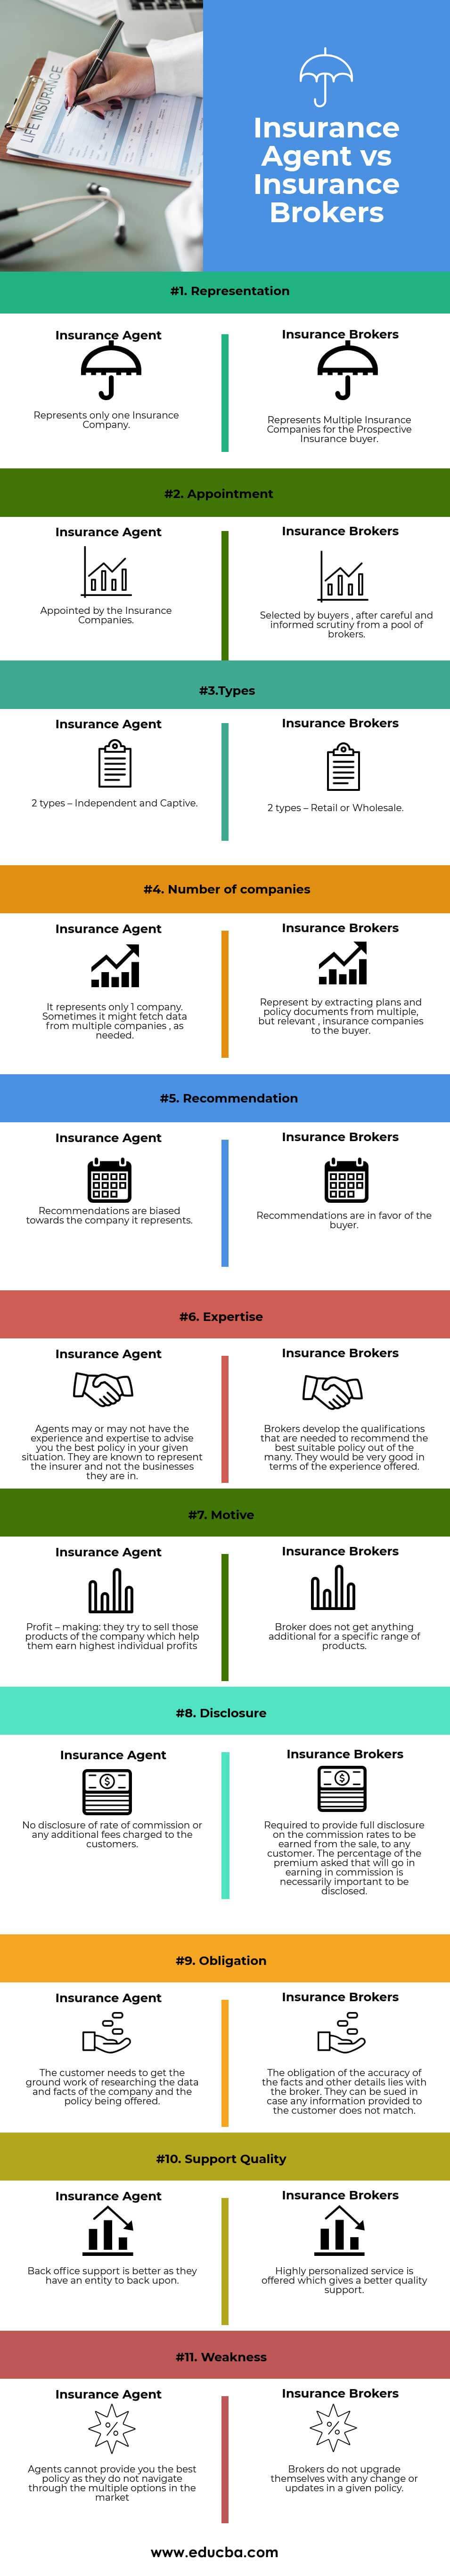 Insurance Agent vs Insurance Brokers (info)